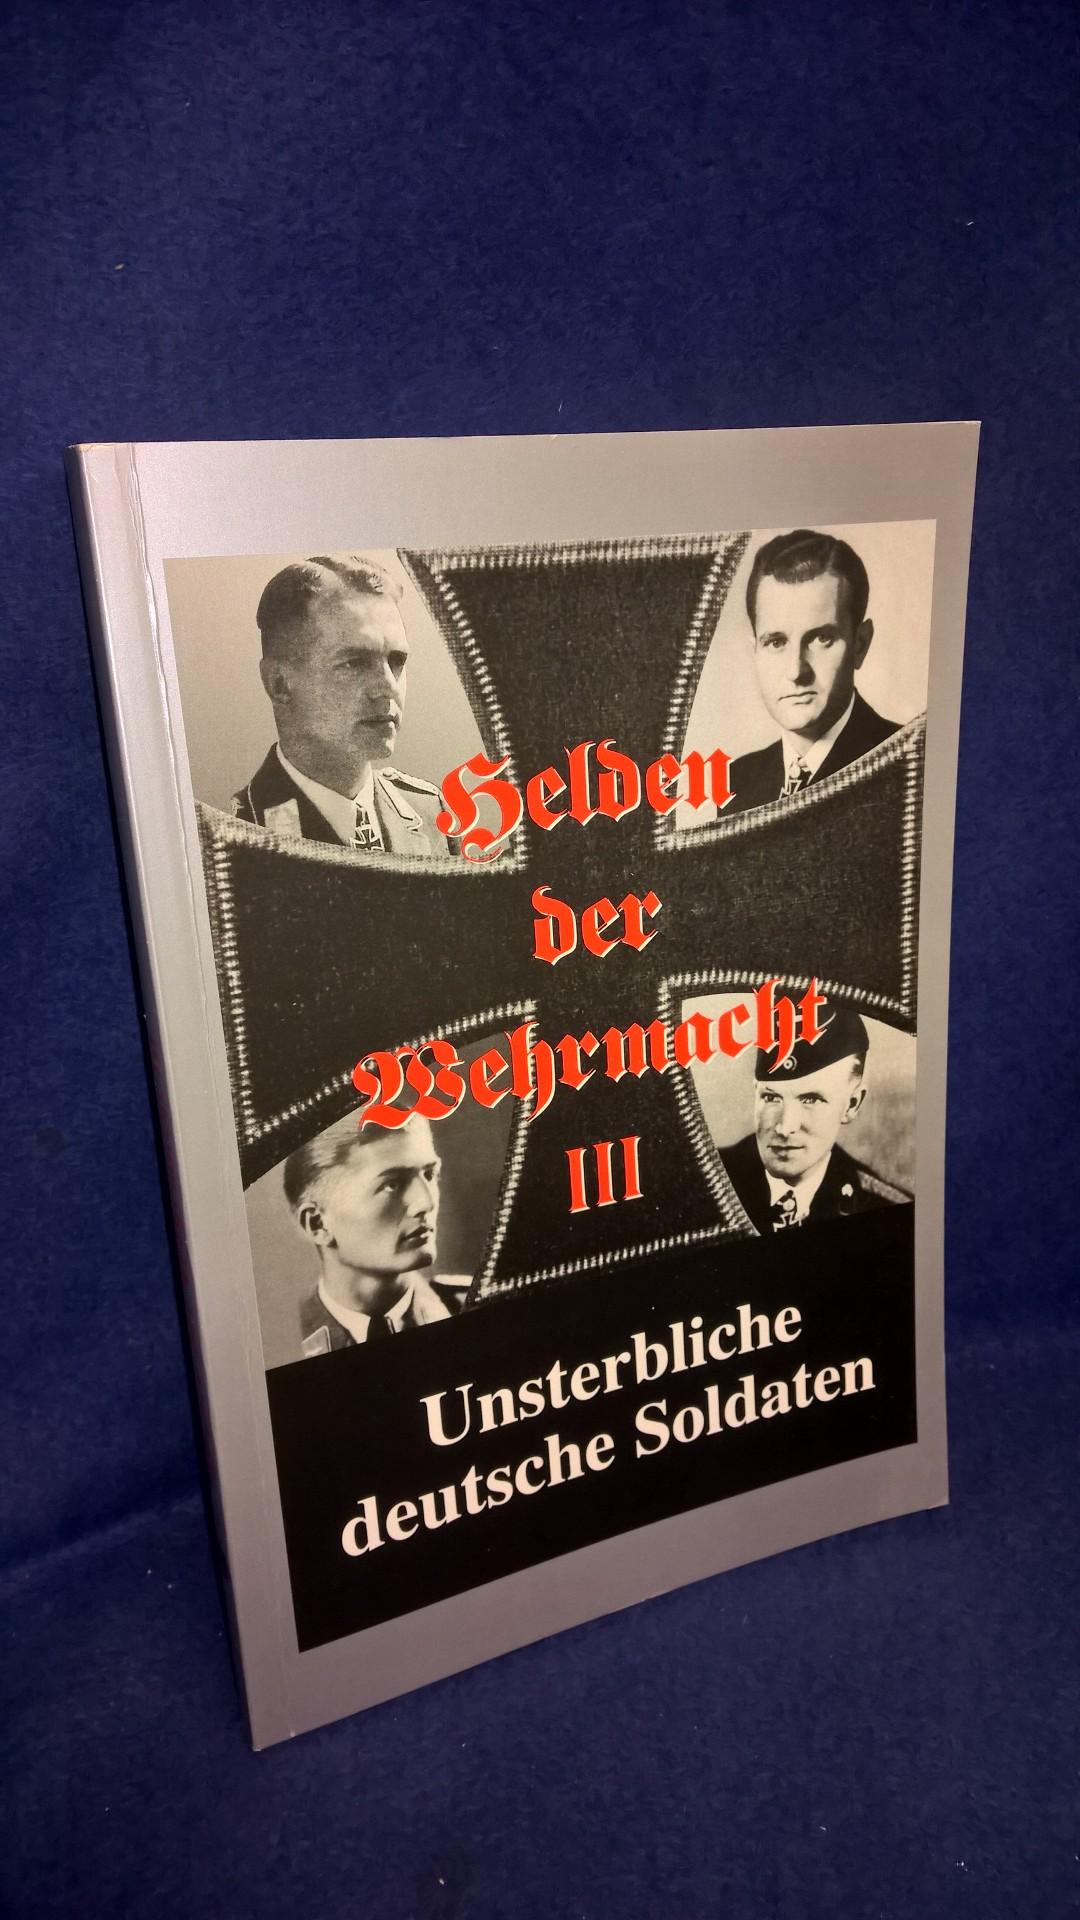 Helden der Wehrmacht III. Unsterbliche deutsche Soldaten.